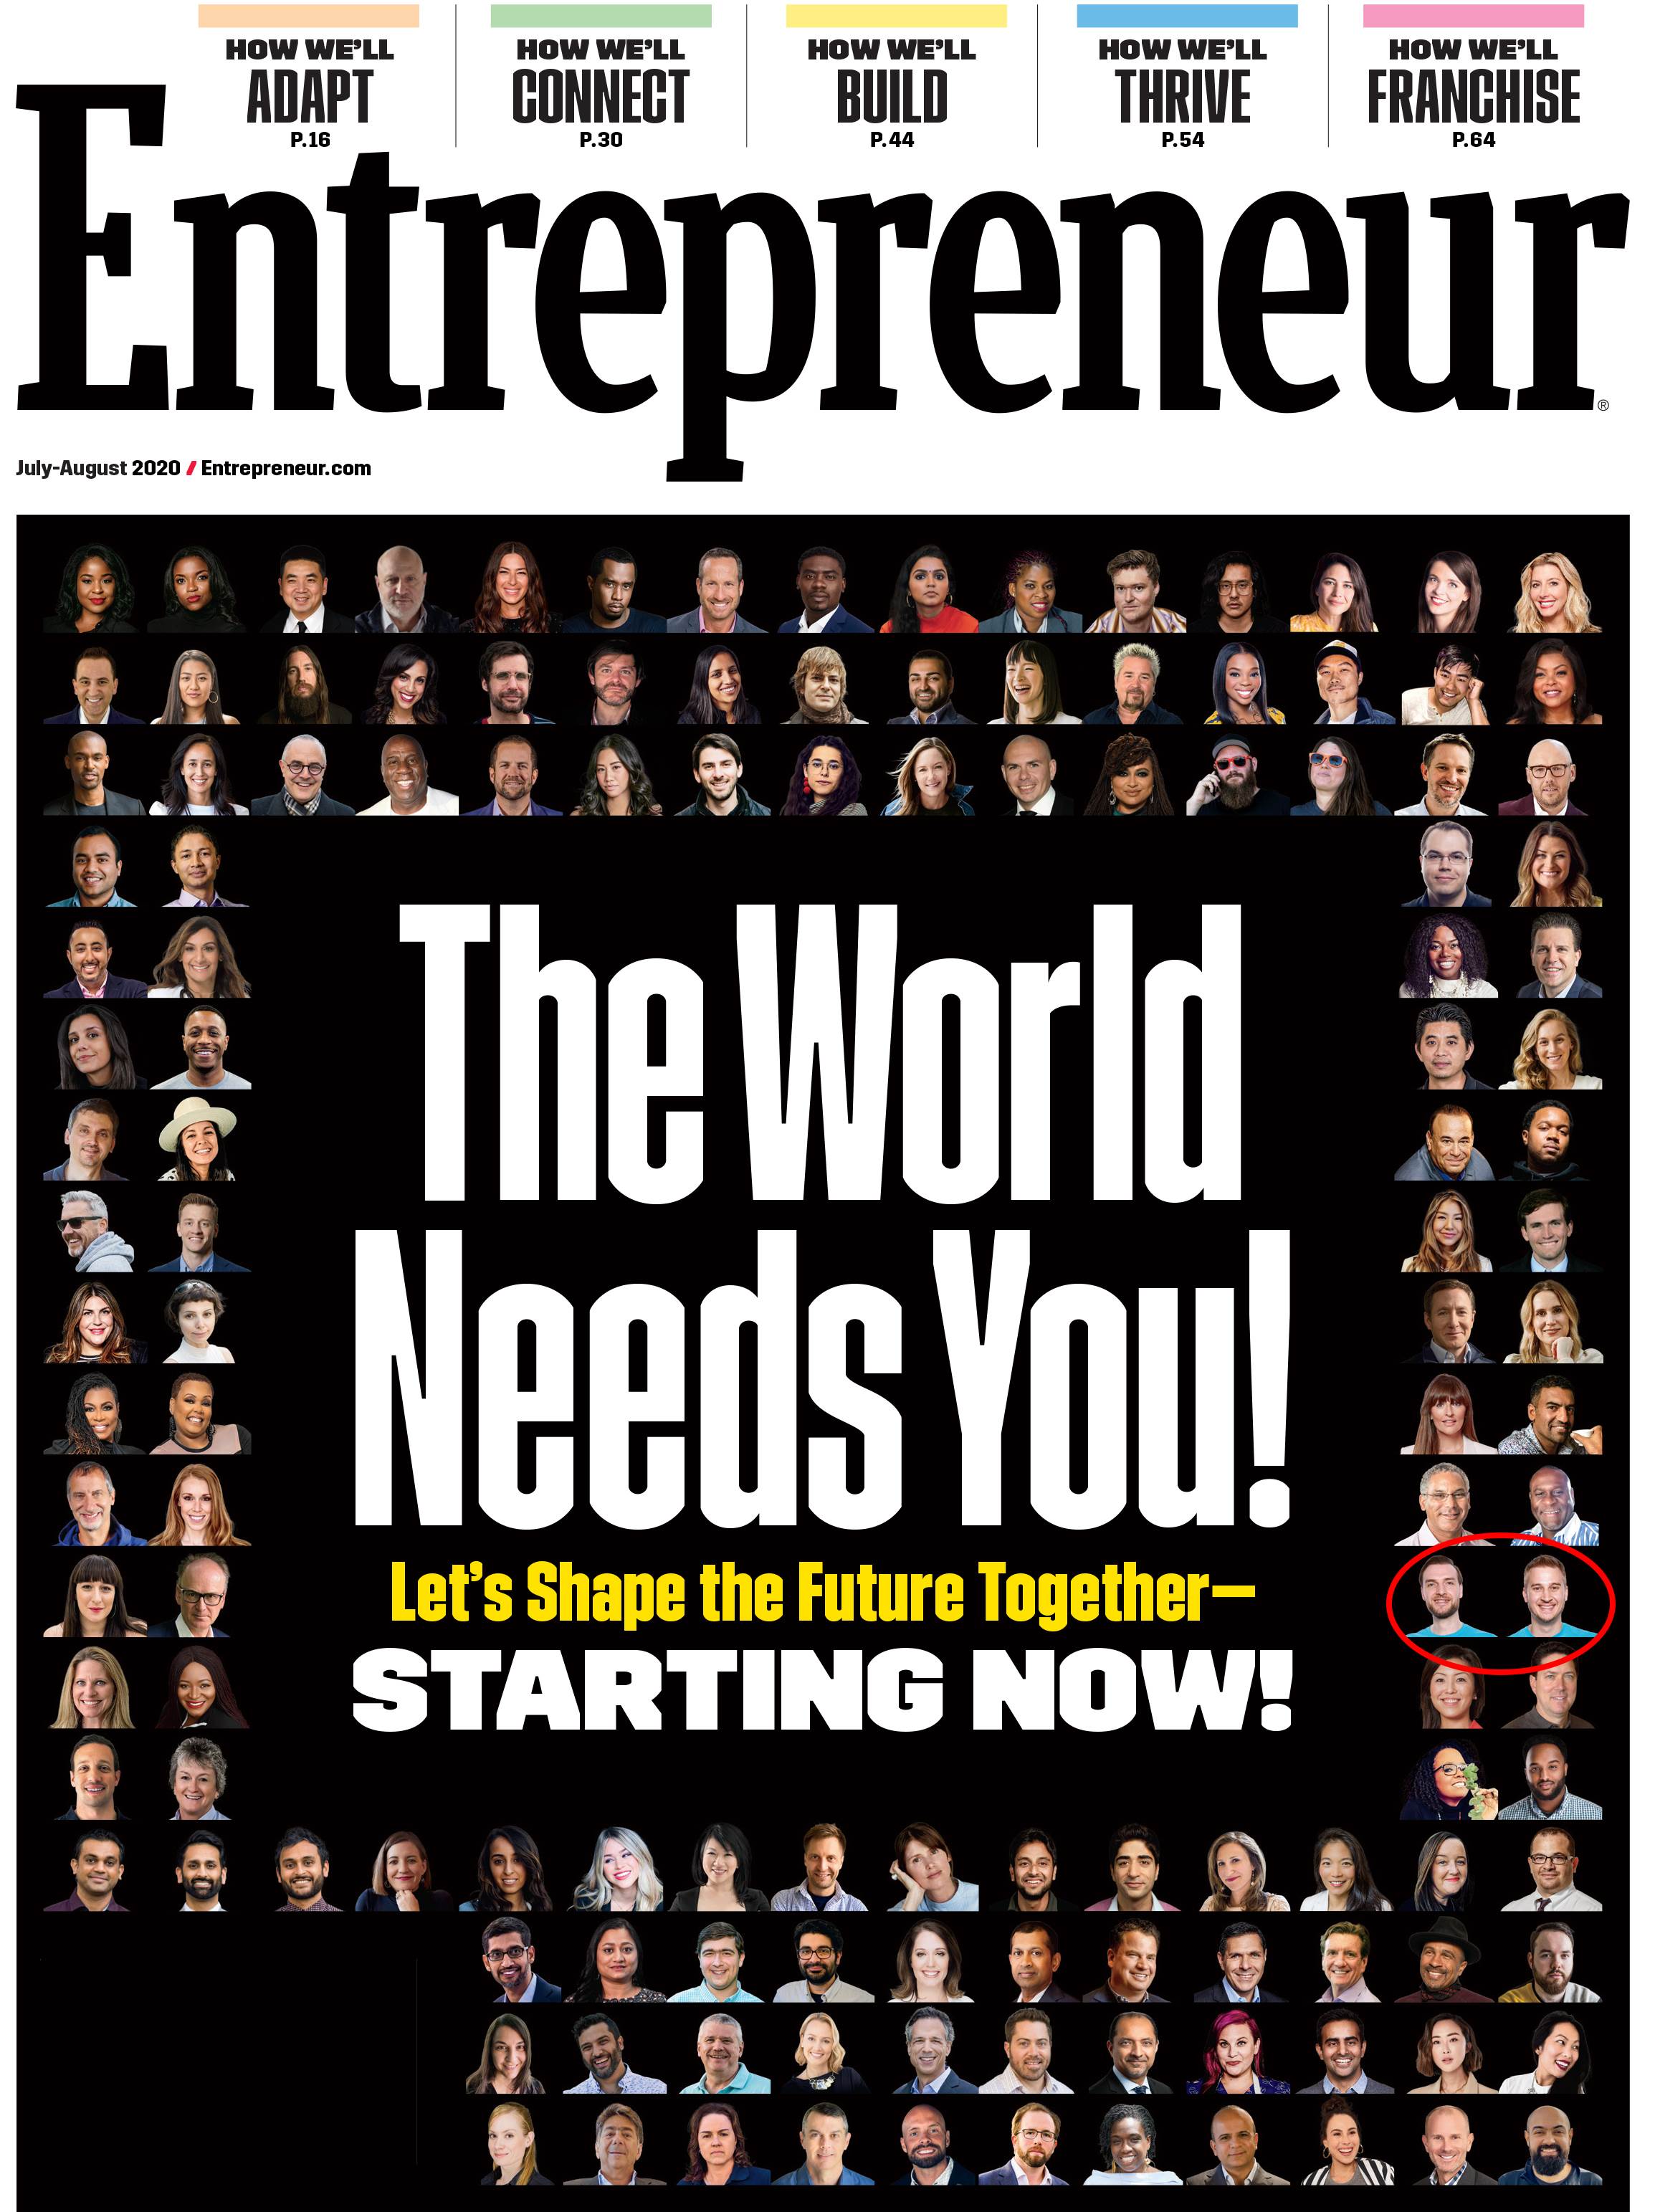 Entrepreneur Magazine ranking